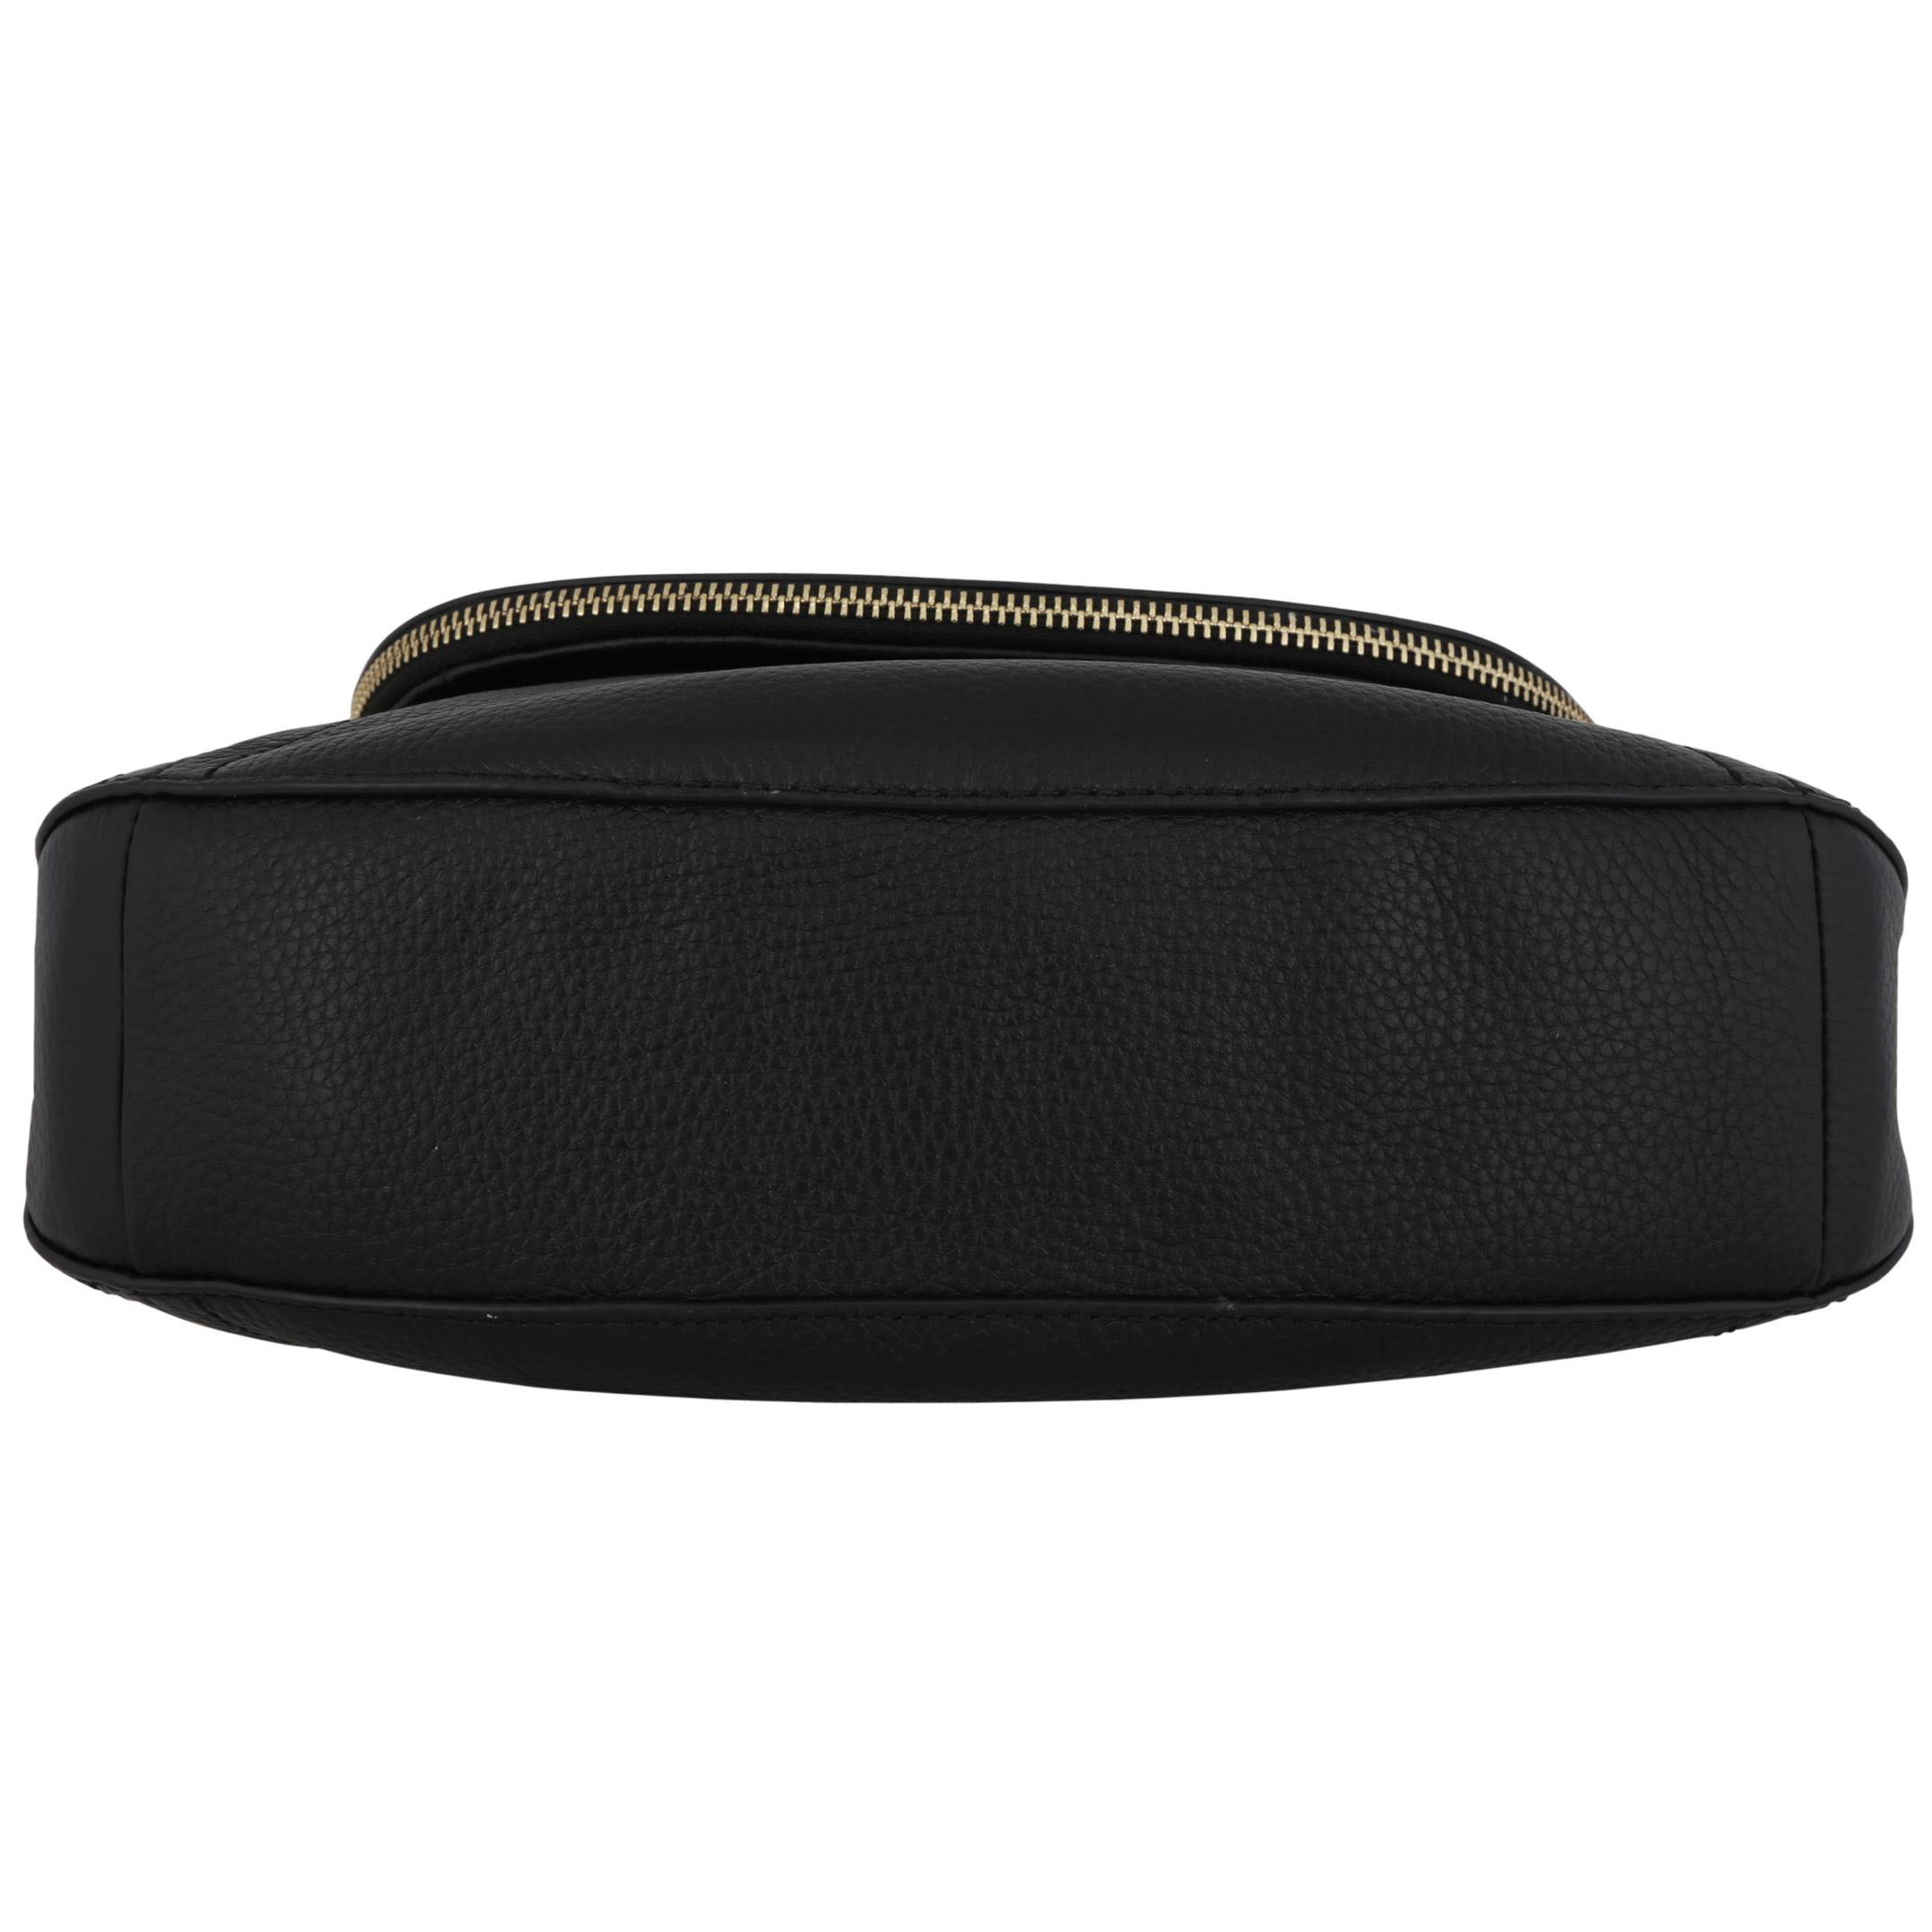 Michael Kors Shoulder Bag Aria Leather Studded Medium Convertible Shoulder Bag Black # 35T8GXAL2L